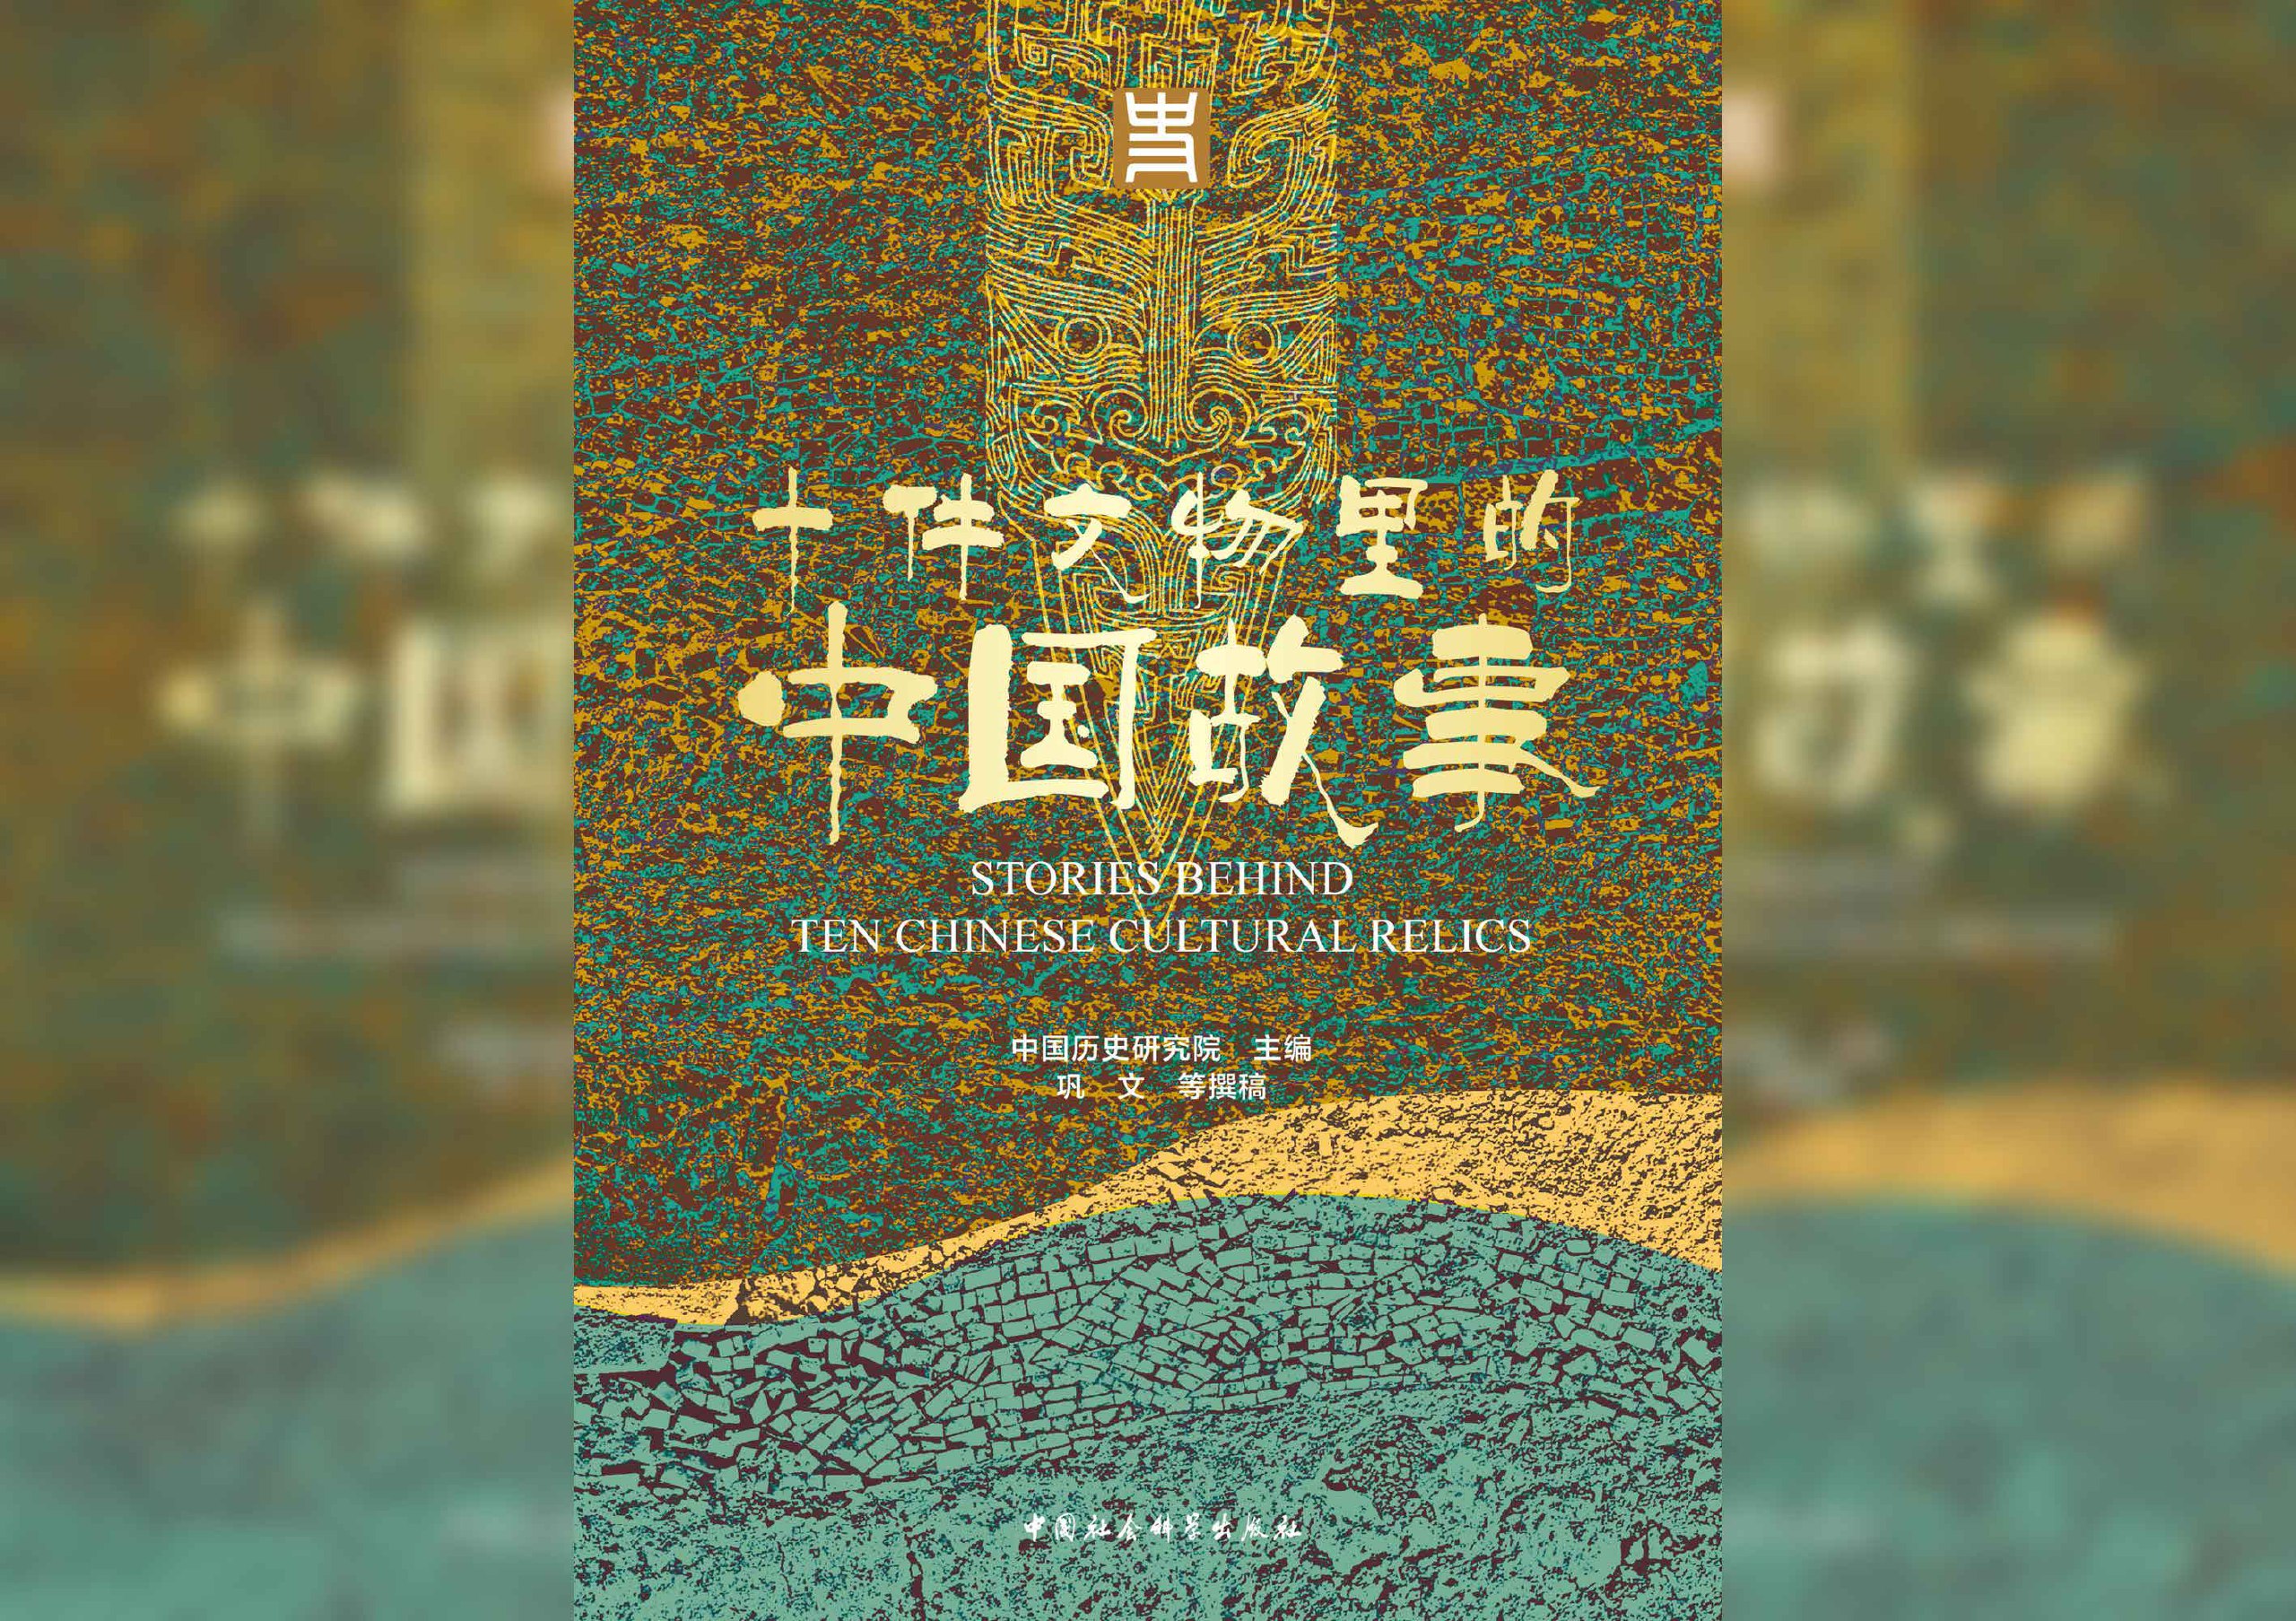 《十件文物里的中国故事》电子书  中国历史研究院